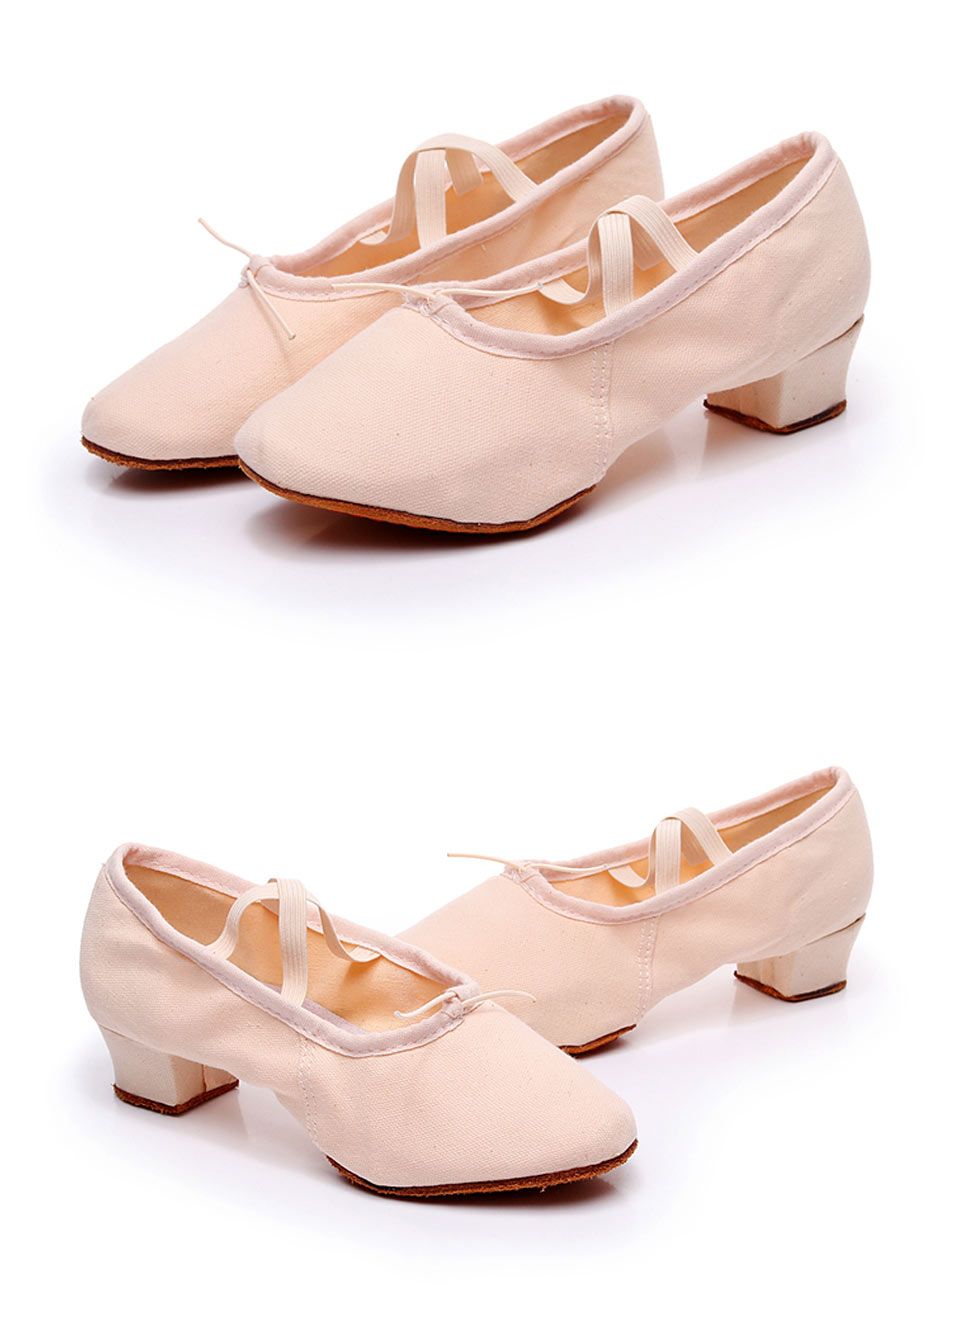 come4buy.com-Mulleres Zapatos de baile Nenas Ballet Jazz Salsa Shoes